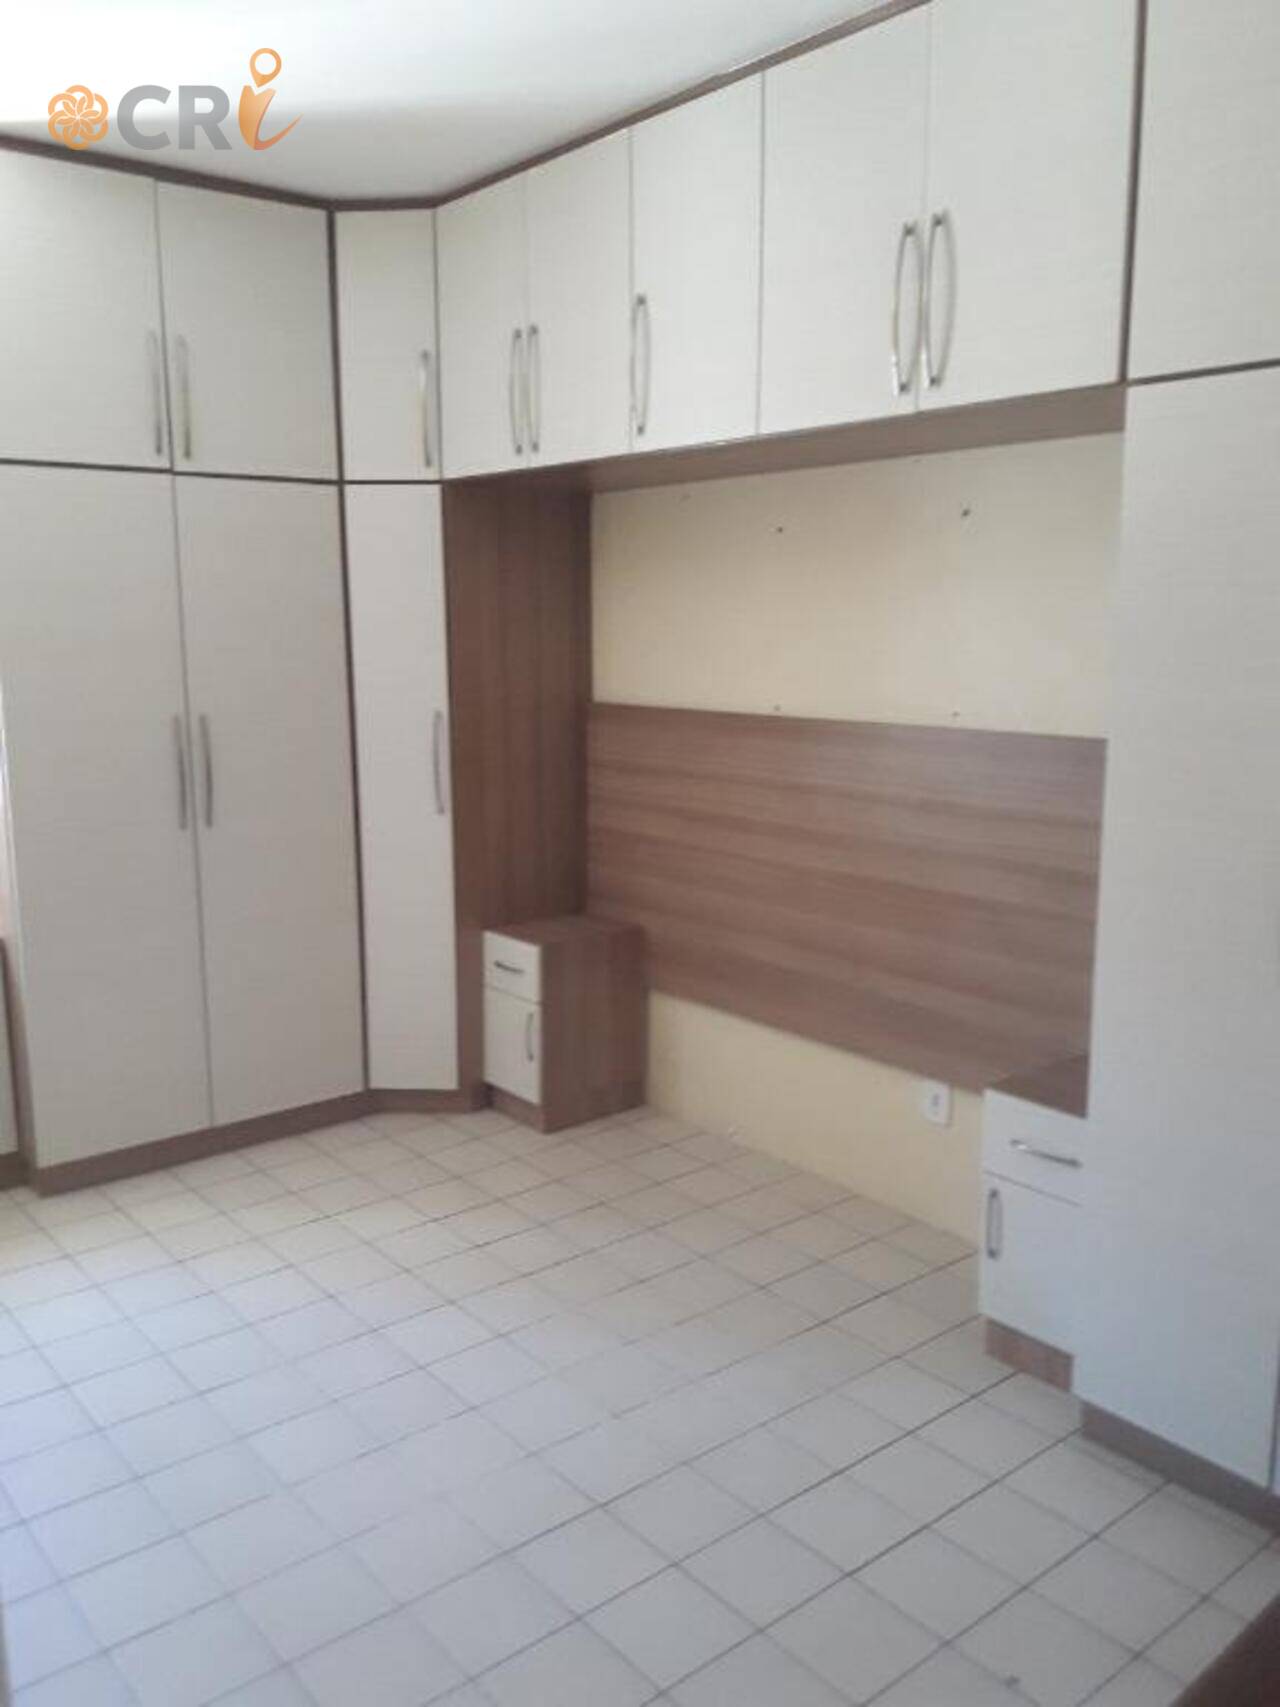 Apartamento com 3 quartos, 1 suíte, 1 vaga, à venda, 110 m² por R$ 260.000 - Cocó - Fortaleza/CE - AP2073